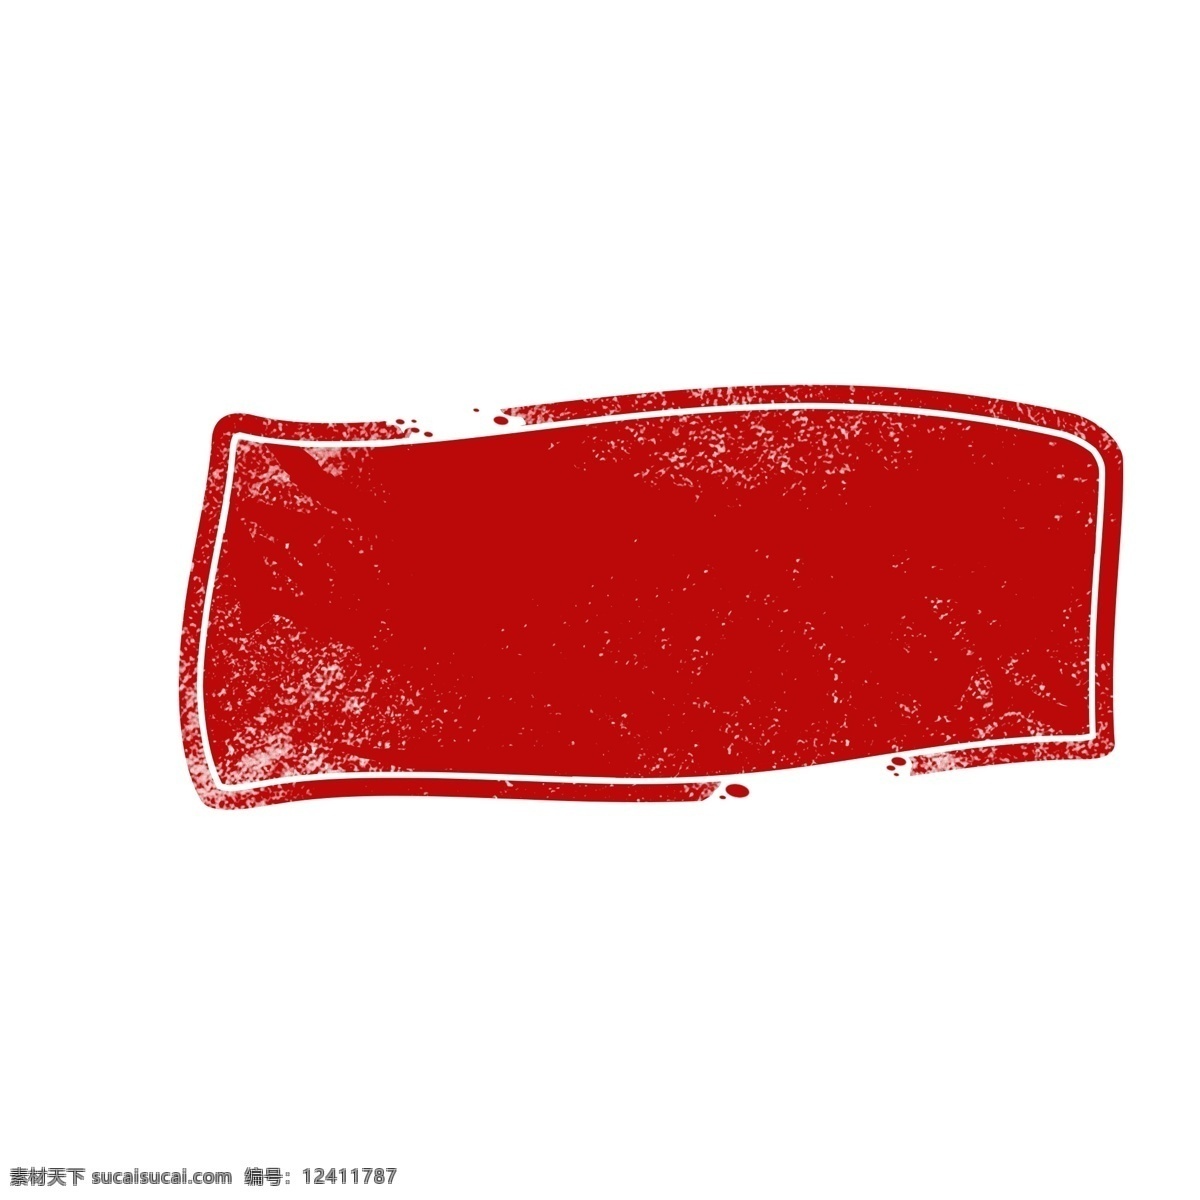 红色 传统 印章 边框 商用 元素 圆形 线条 印章元素 红色印章 可商用 传统印章 印章边框 边框元素 形状 圆形印章 水墨印章 水墨